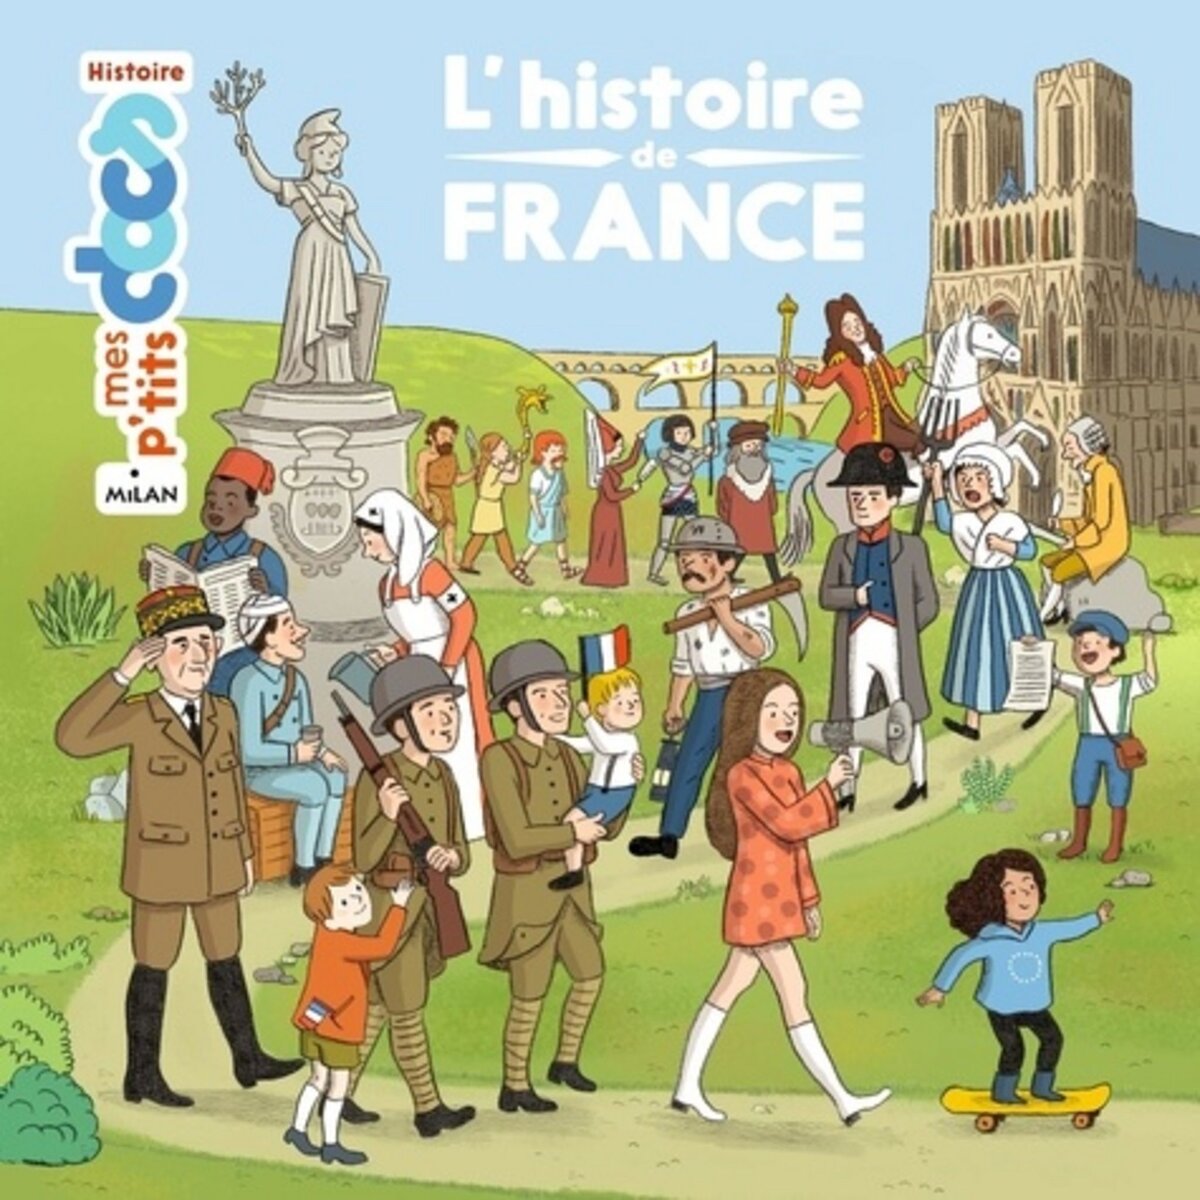  L'HISTOIRE DE FRANCE, Ledu Stéphanie